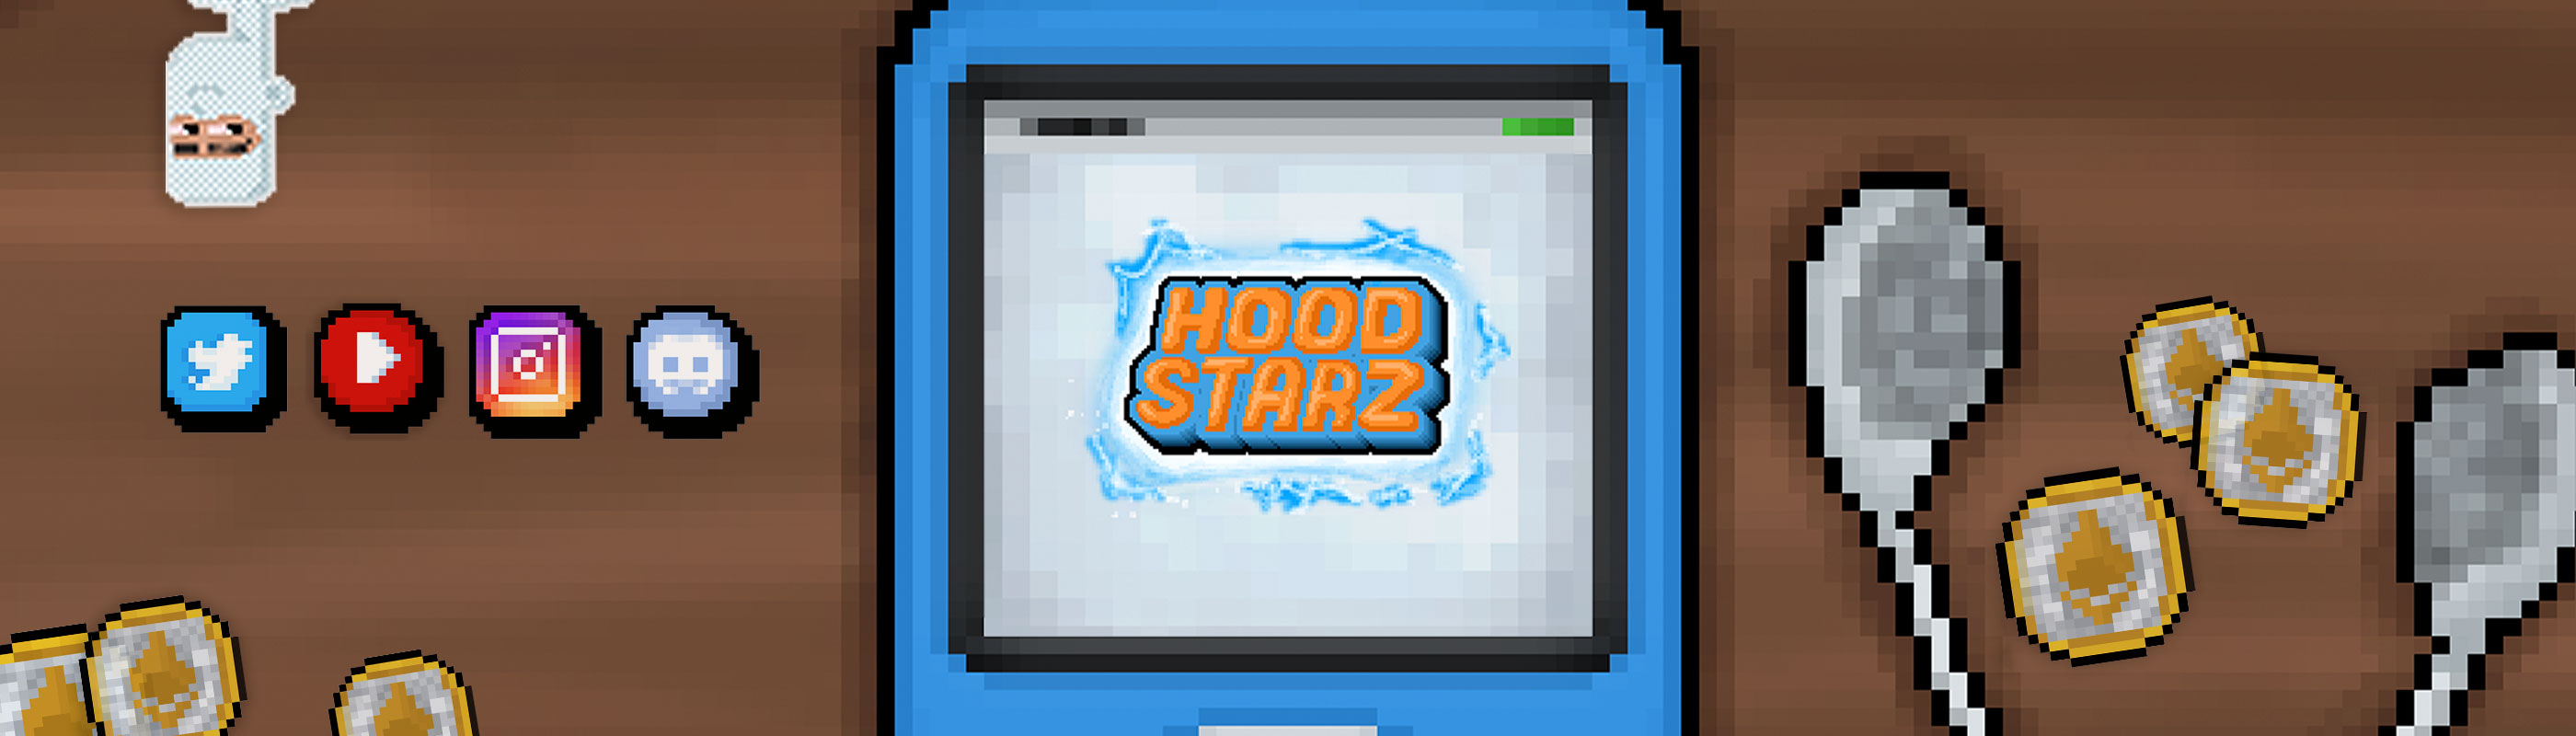 Hoodstarz_NFT banner